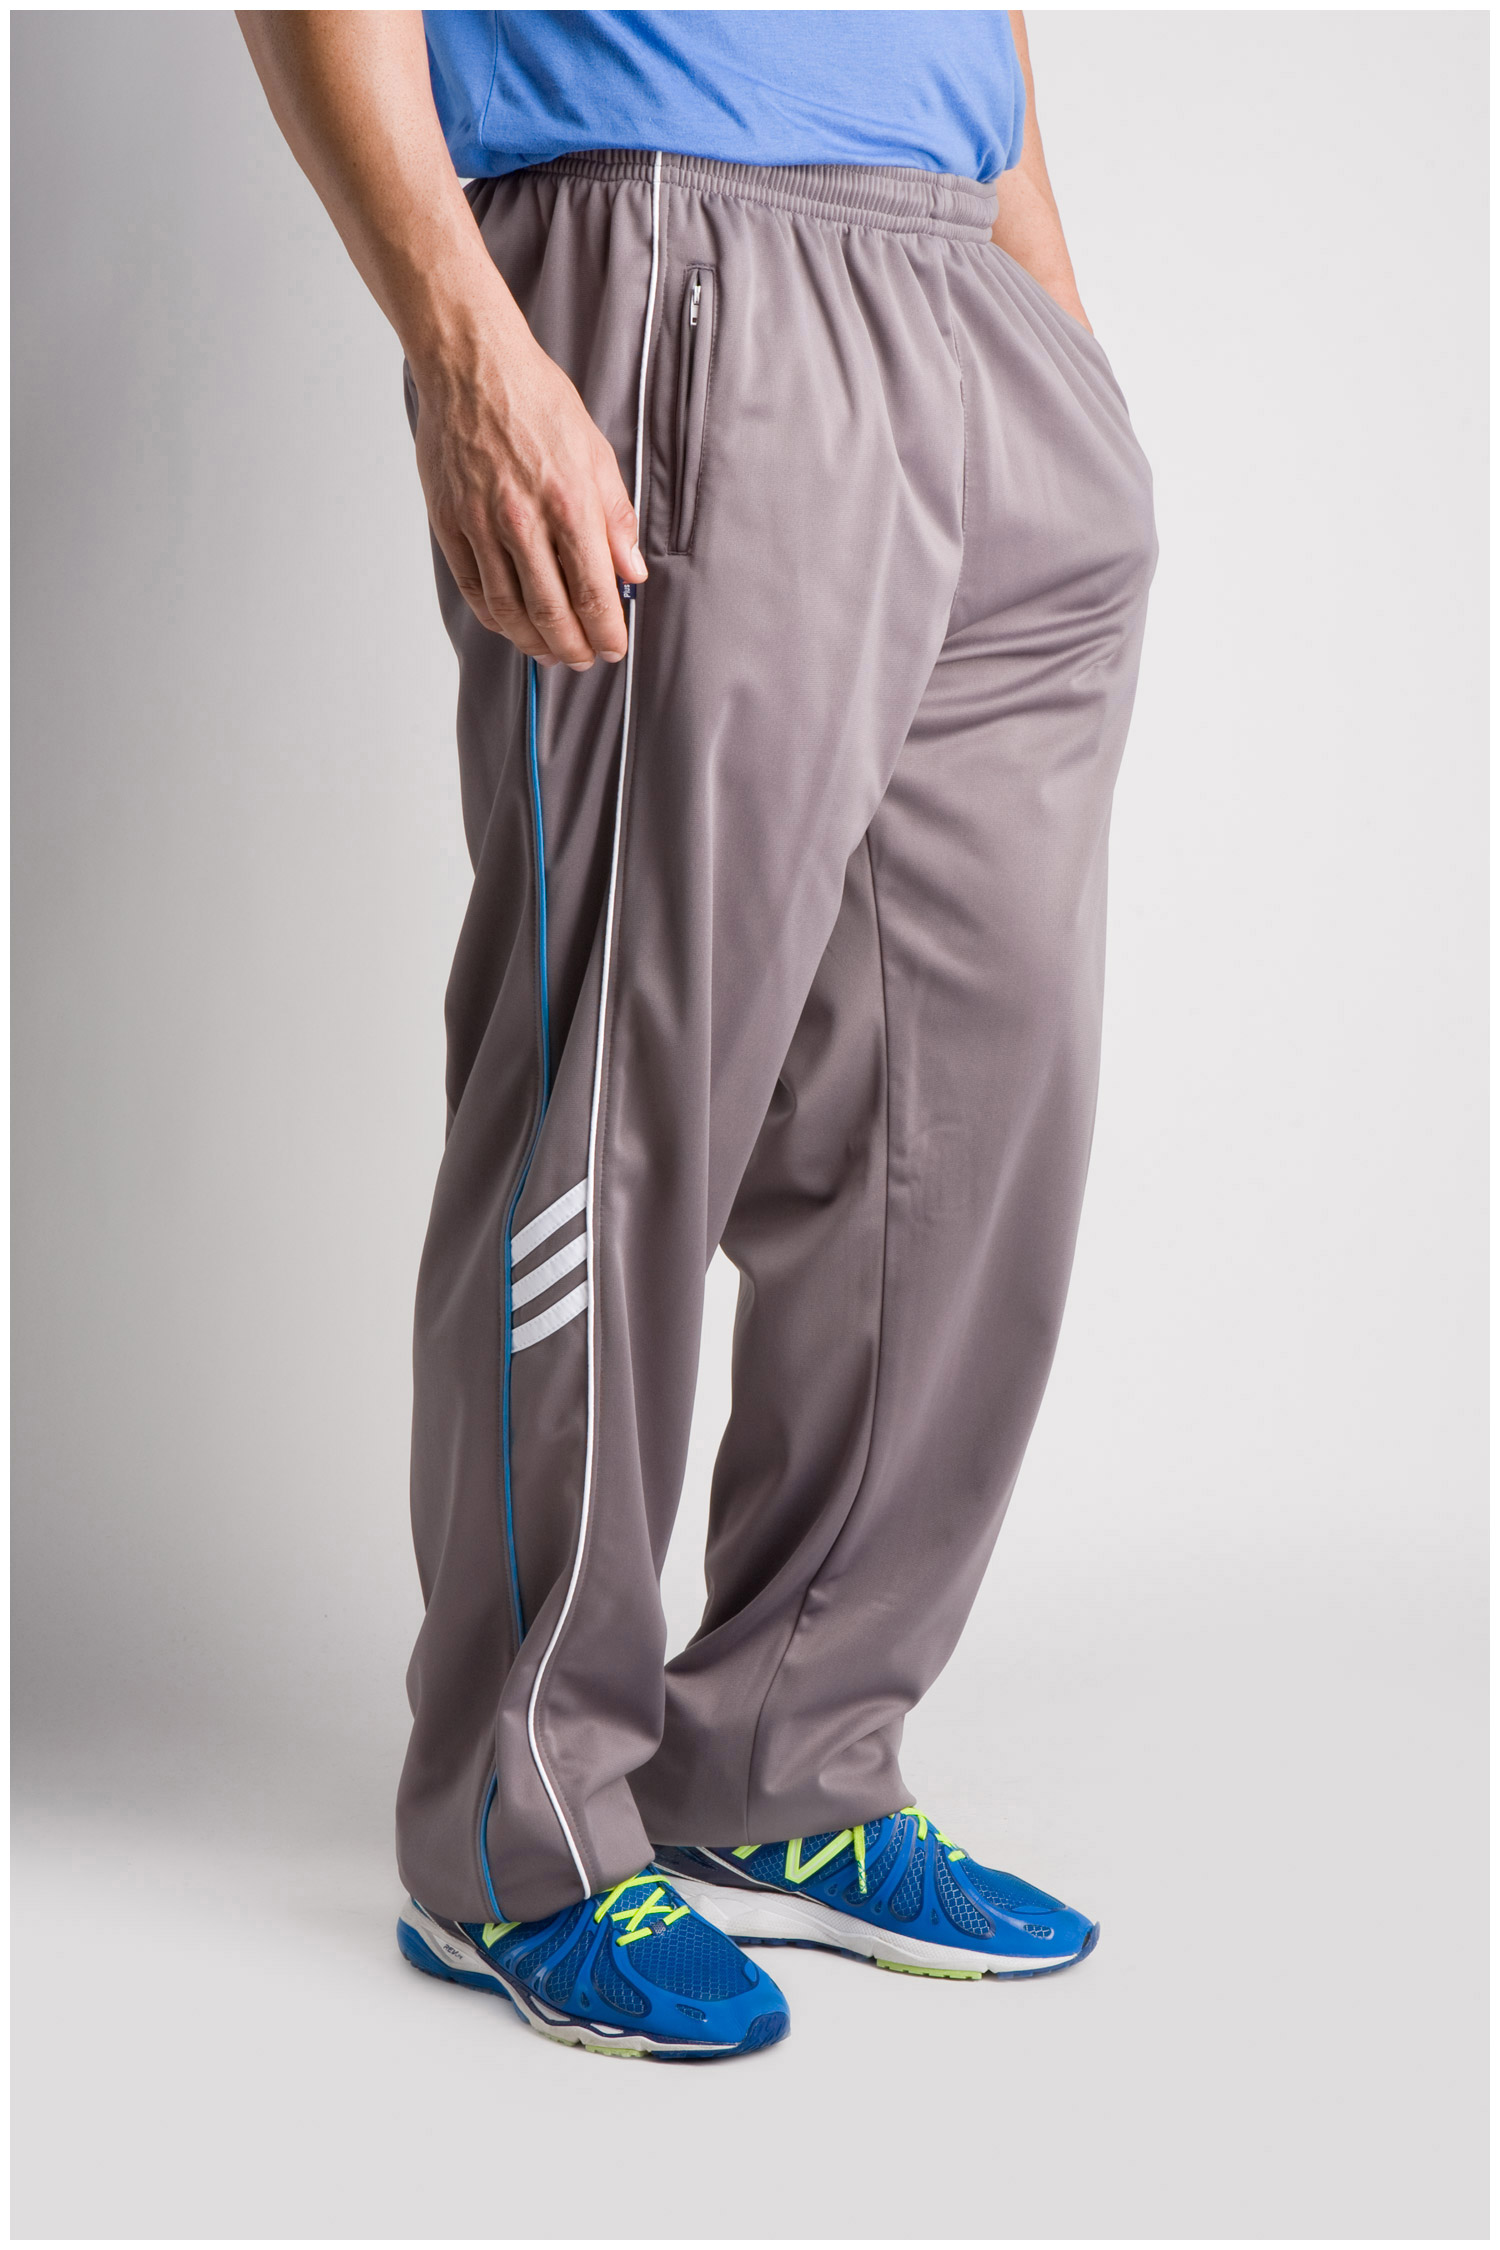 Pantalones de Chandal Tallas Grandes Hombre - Ref. 102580